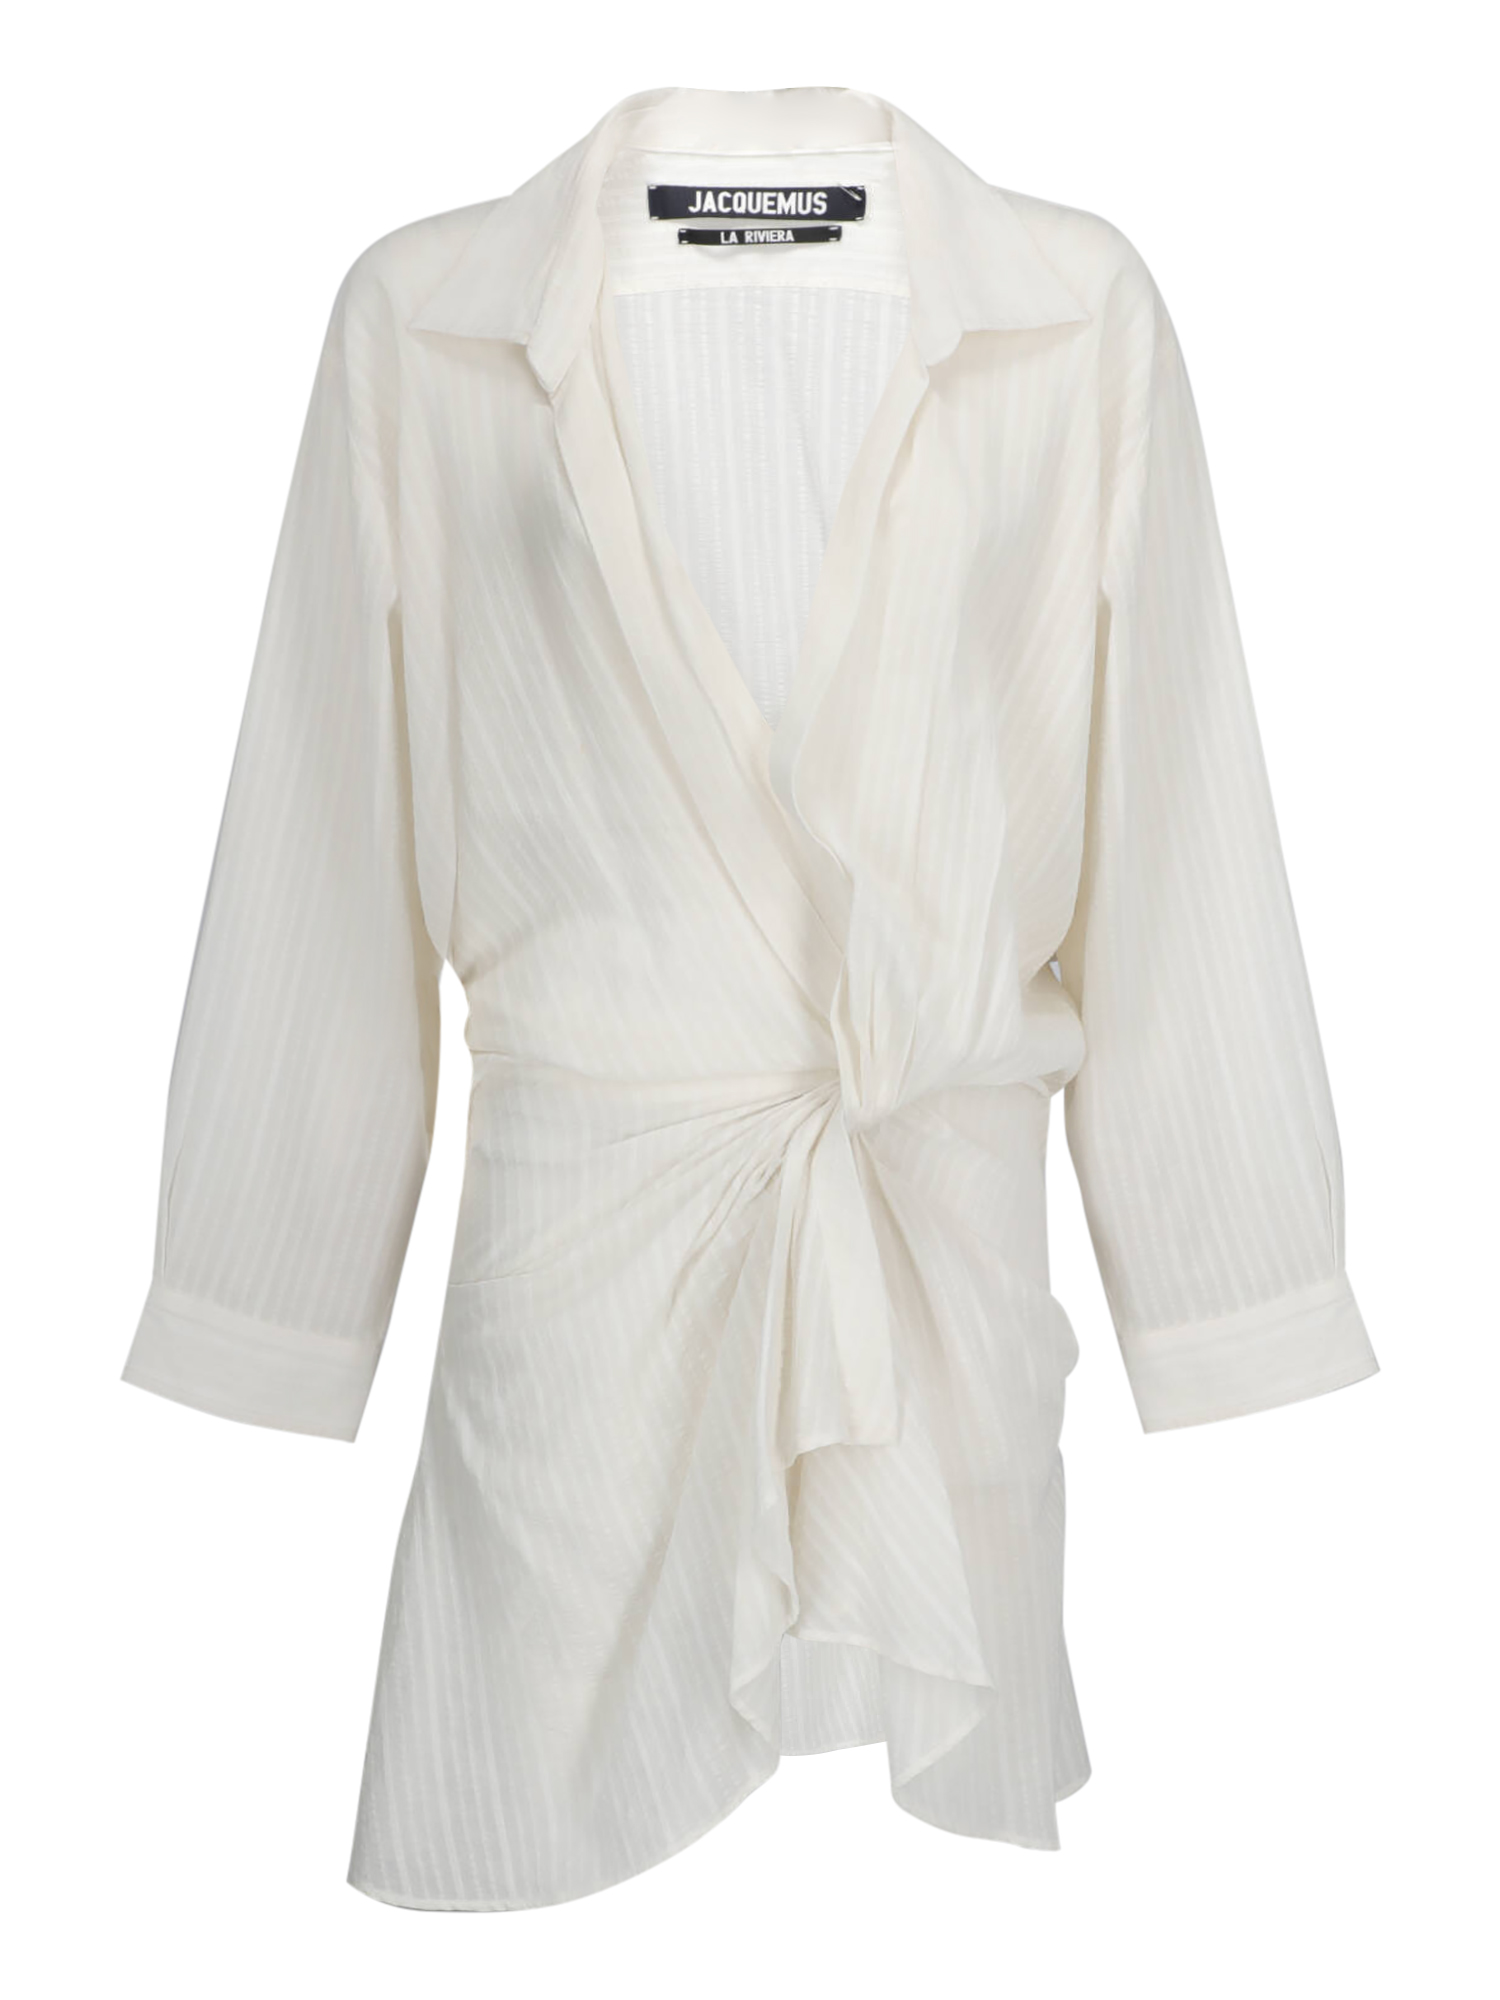 Robes Pour Femme - Jacquemus - En Cotton White - Taille:  -